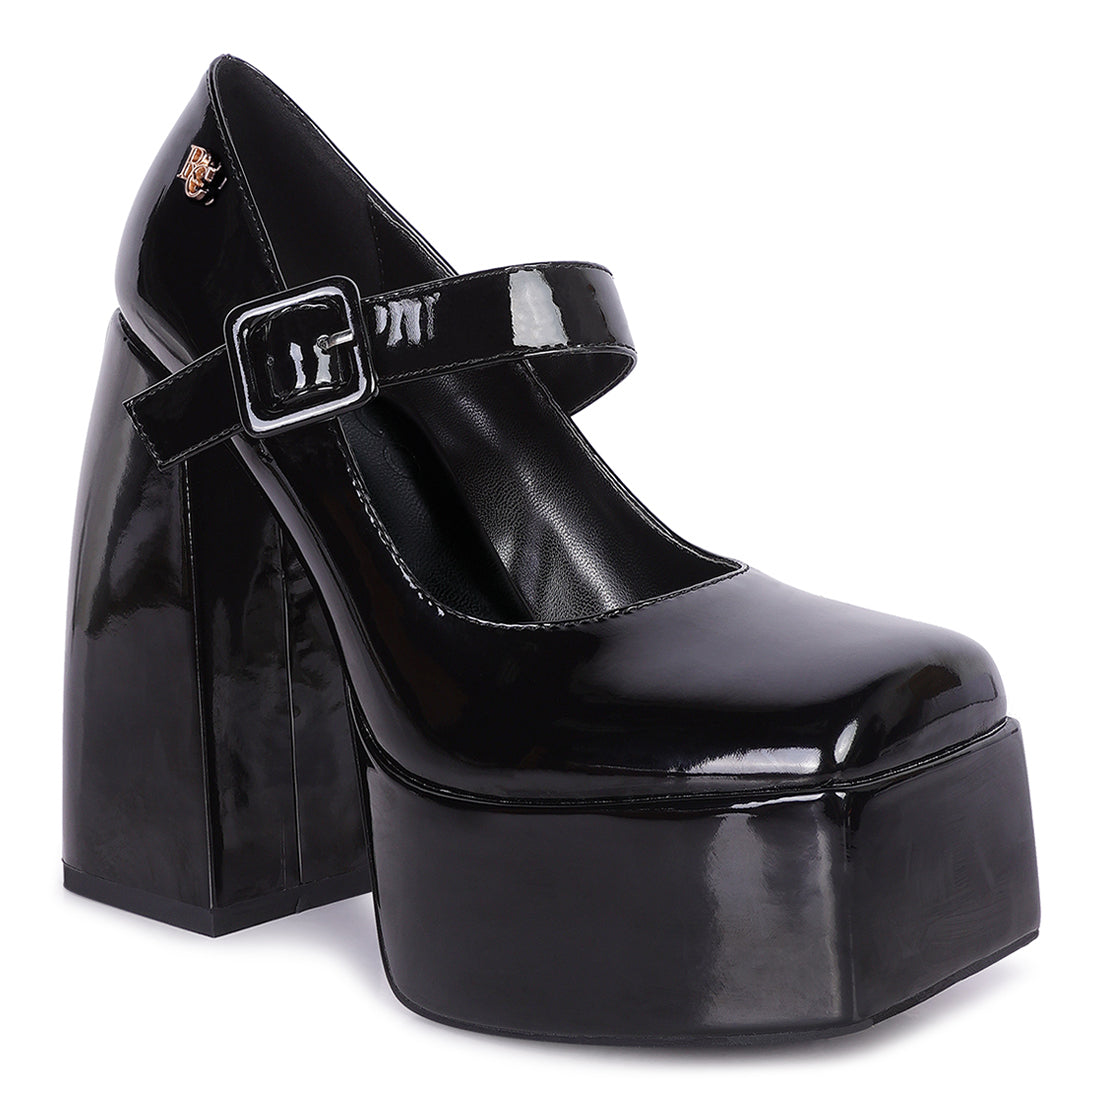 high platform heel mary jane sandals#color_black